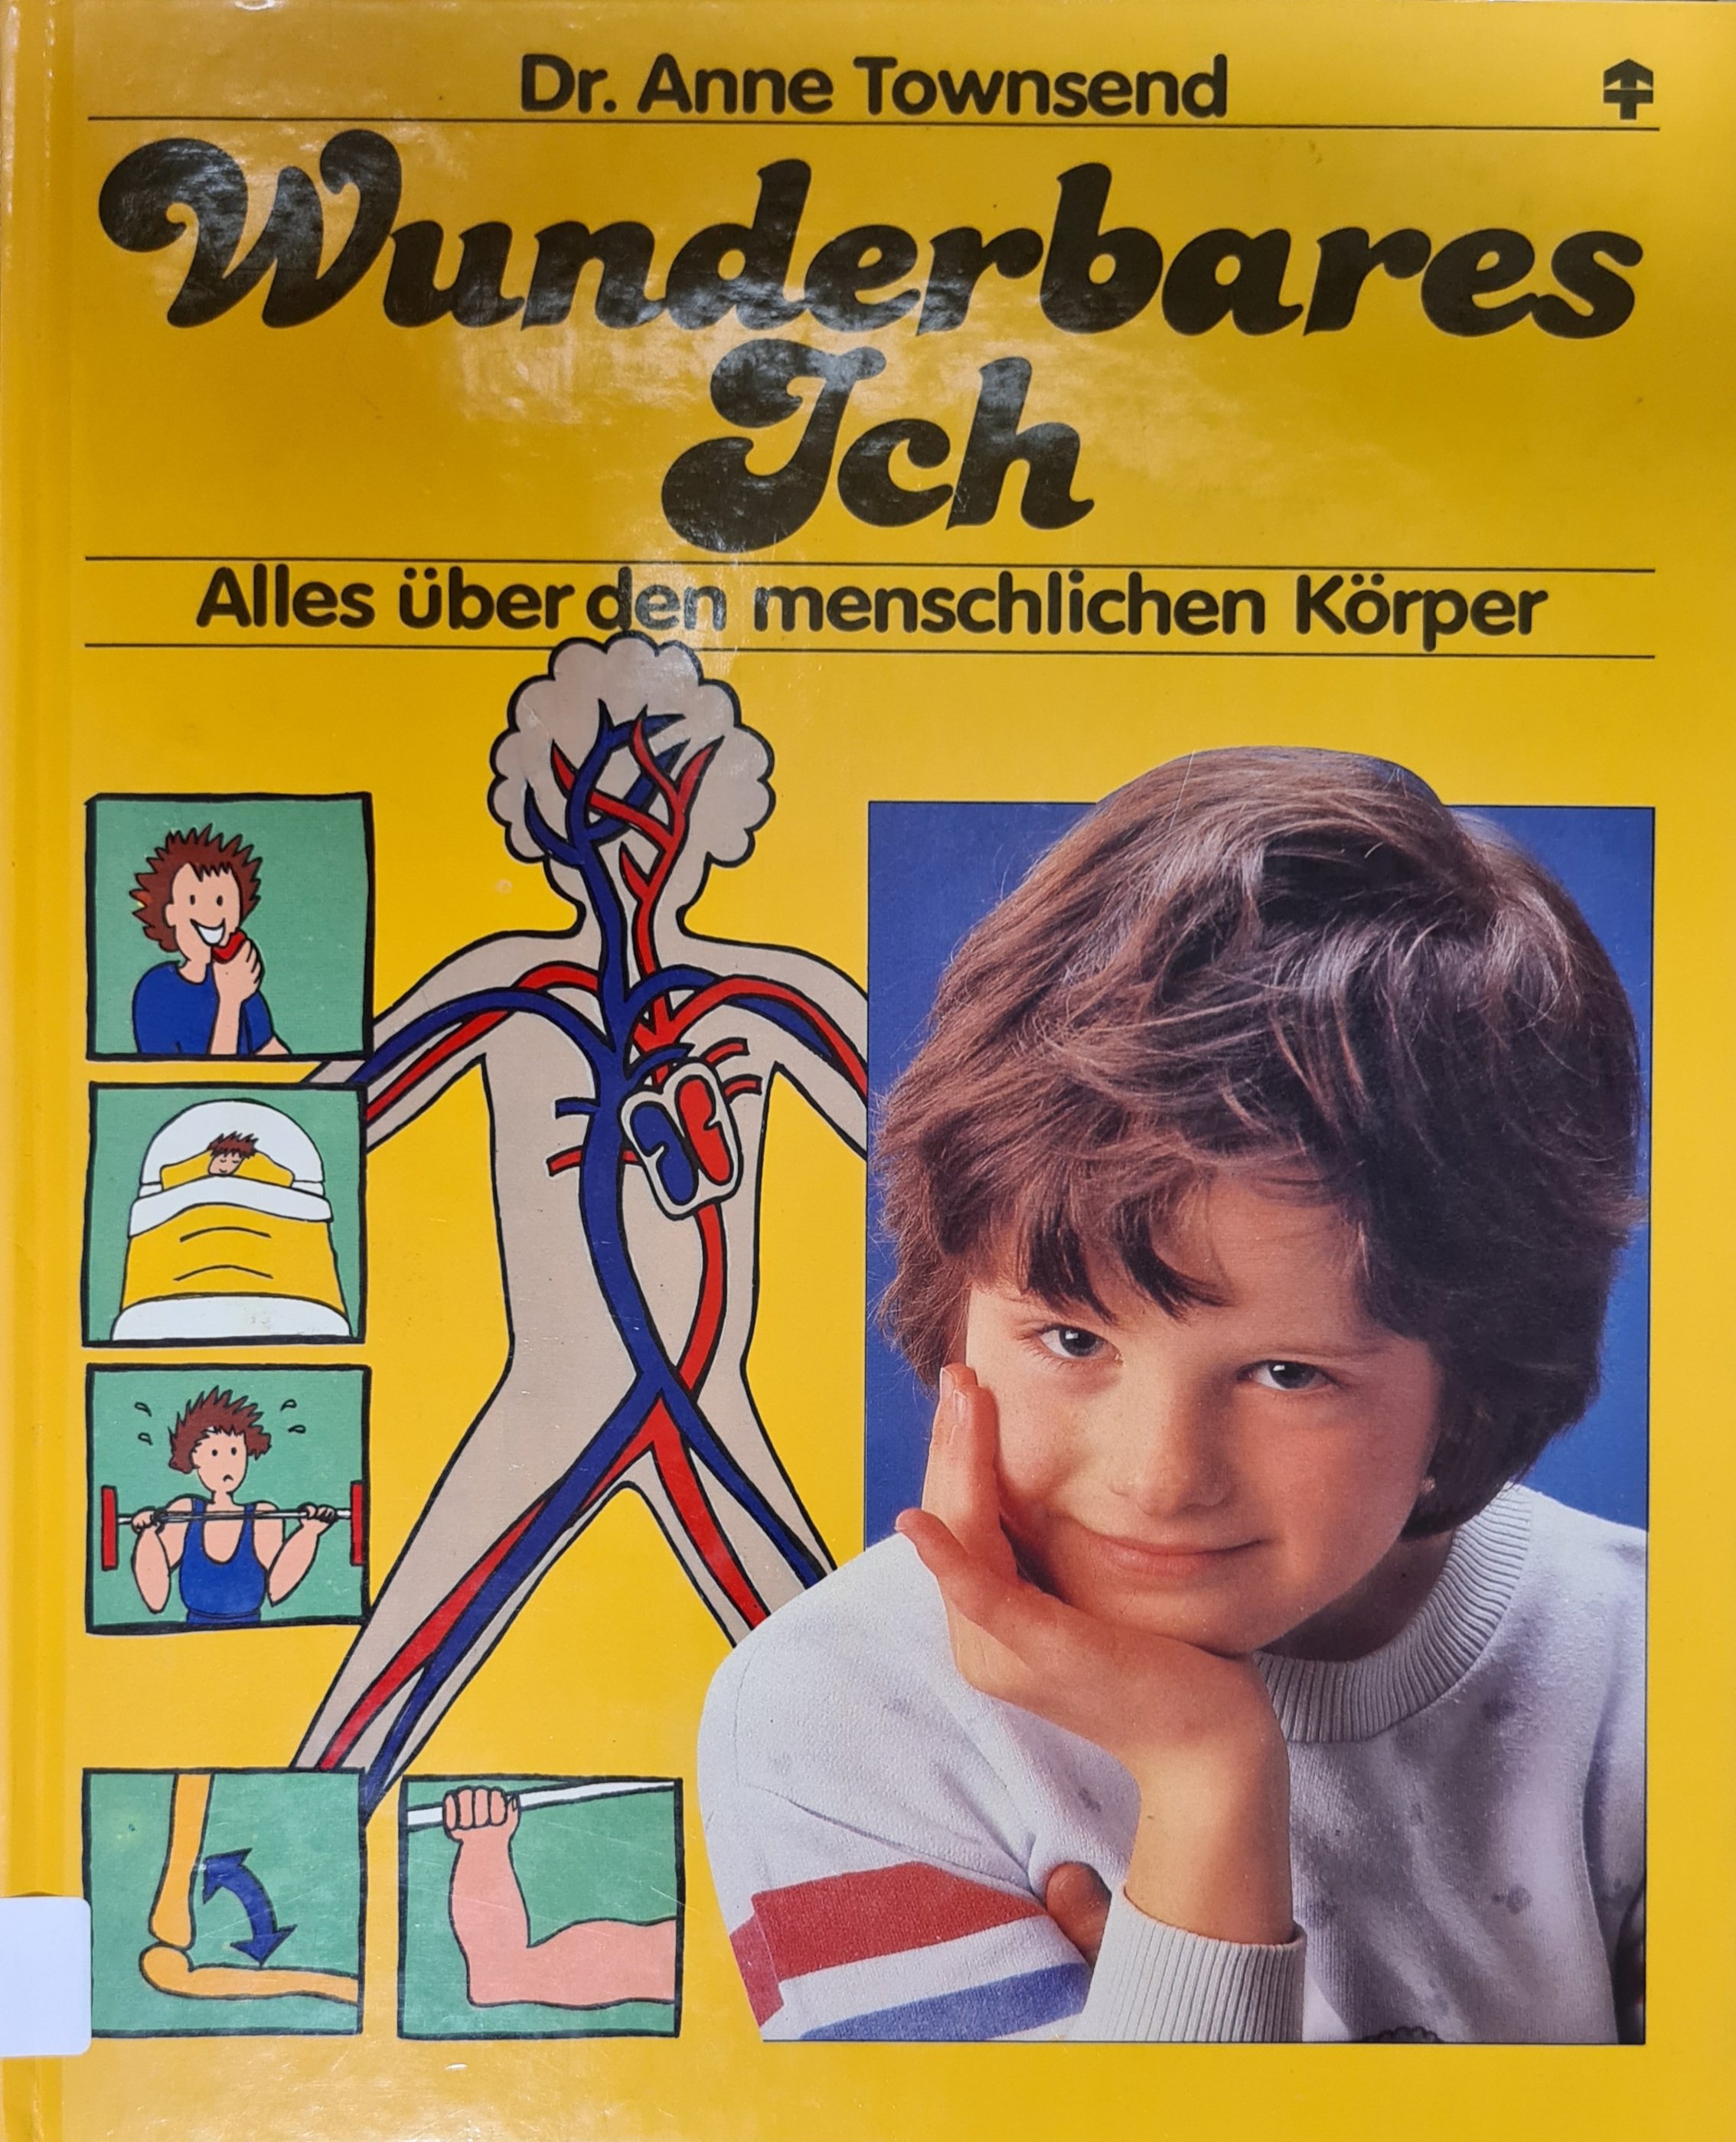 Wunderbares Ich (Krankenhausmuseum Bielefeld e.V. CC BY-NC-SA)